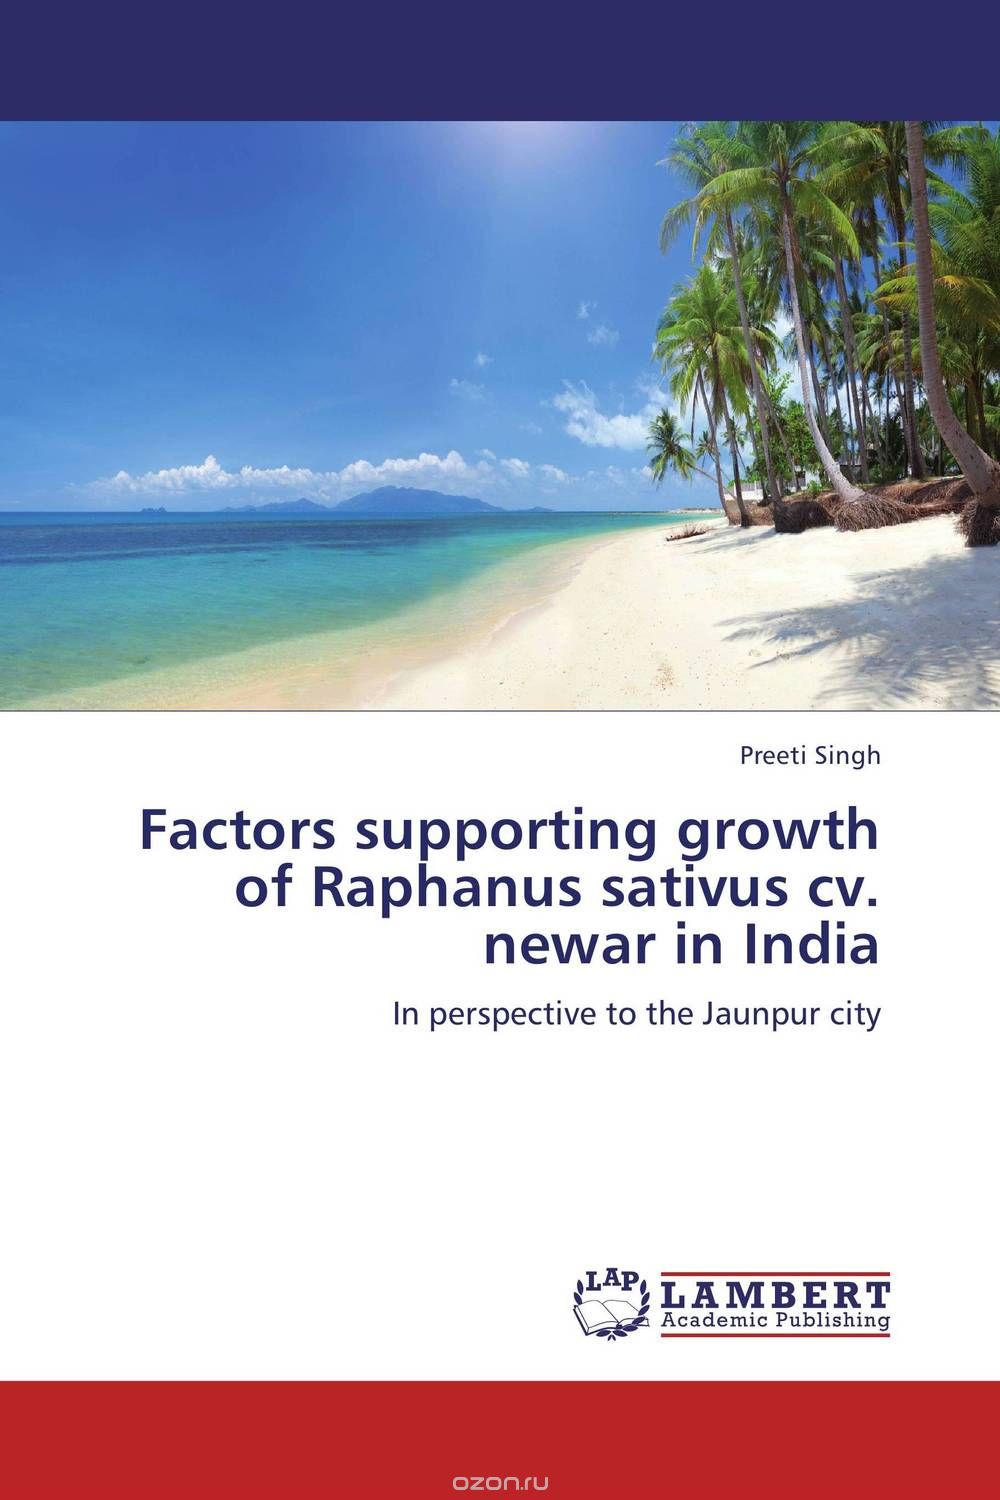 Скачать книгу "Factors supporting growth of Raphanus sativus cv. newar in India"